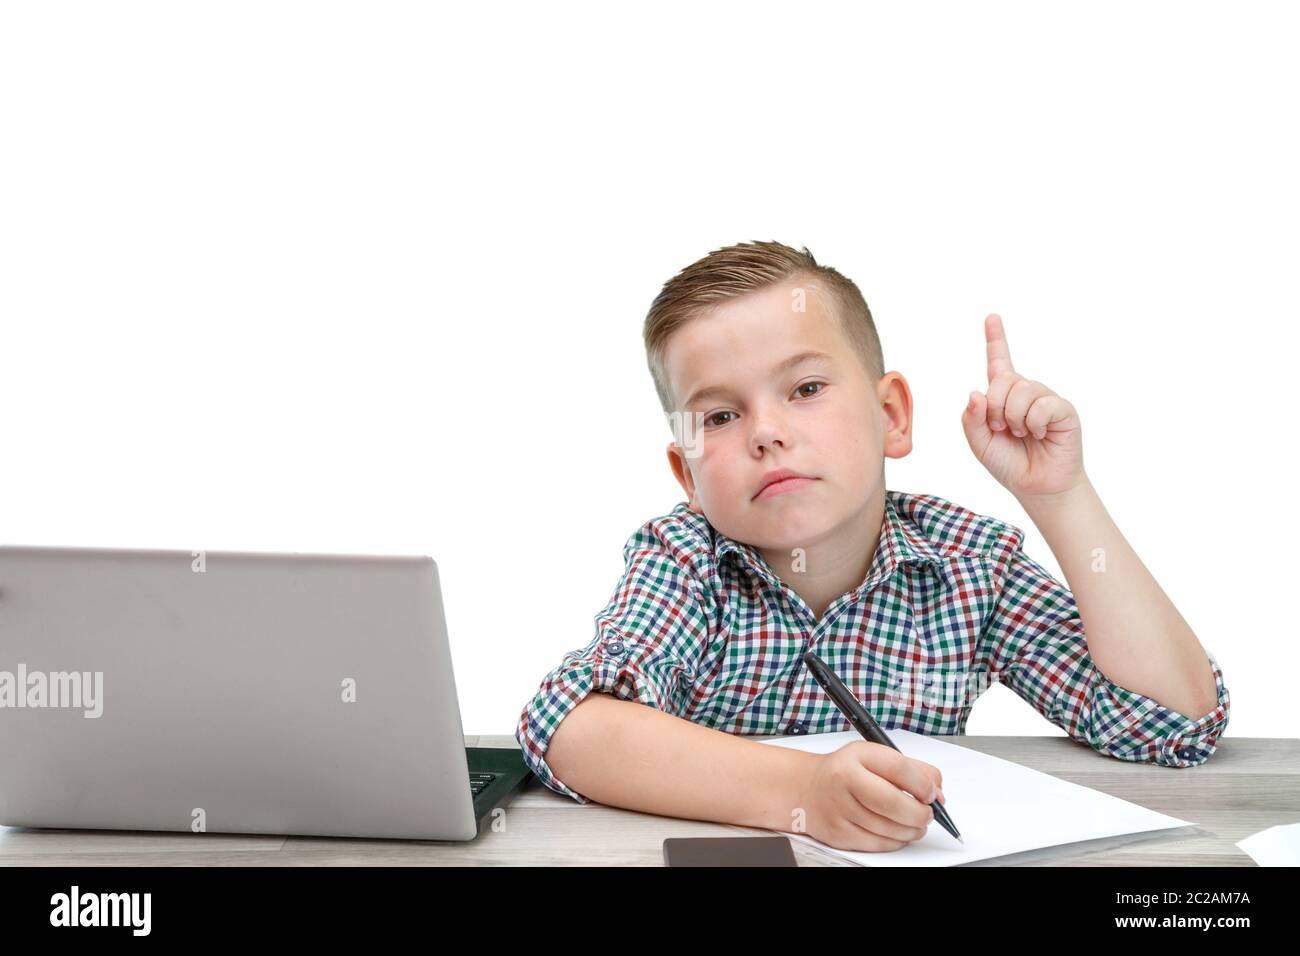 Kaukasischer Junge im Schulalter in einem karierten Hemd auf einem isolierten Hintergrund mit einem Laptop und einem Telefon zeichnet Gedanken in einem Stück Pap Stockfoto